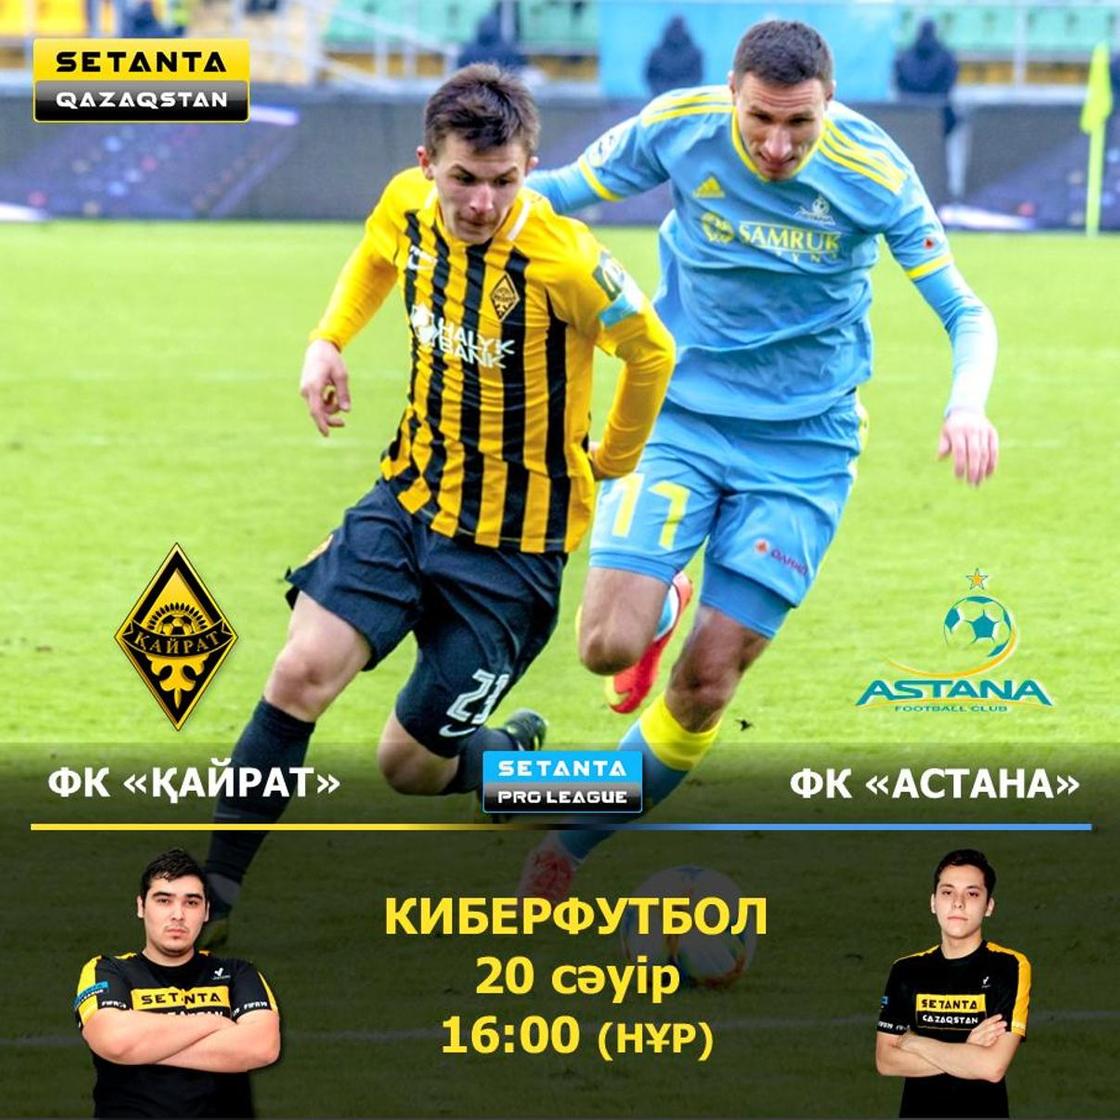 «Астана» и «Кайрат» сыграют в киберфутбол